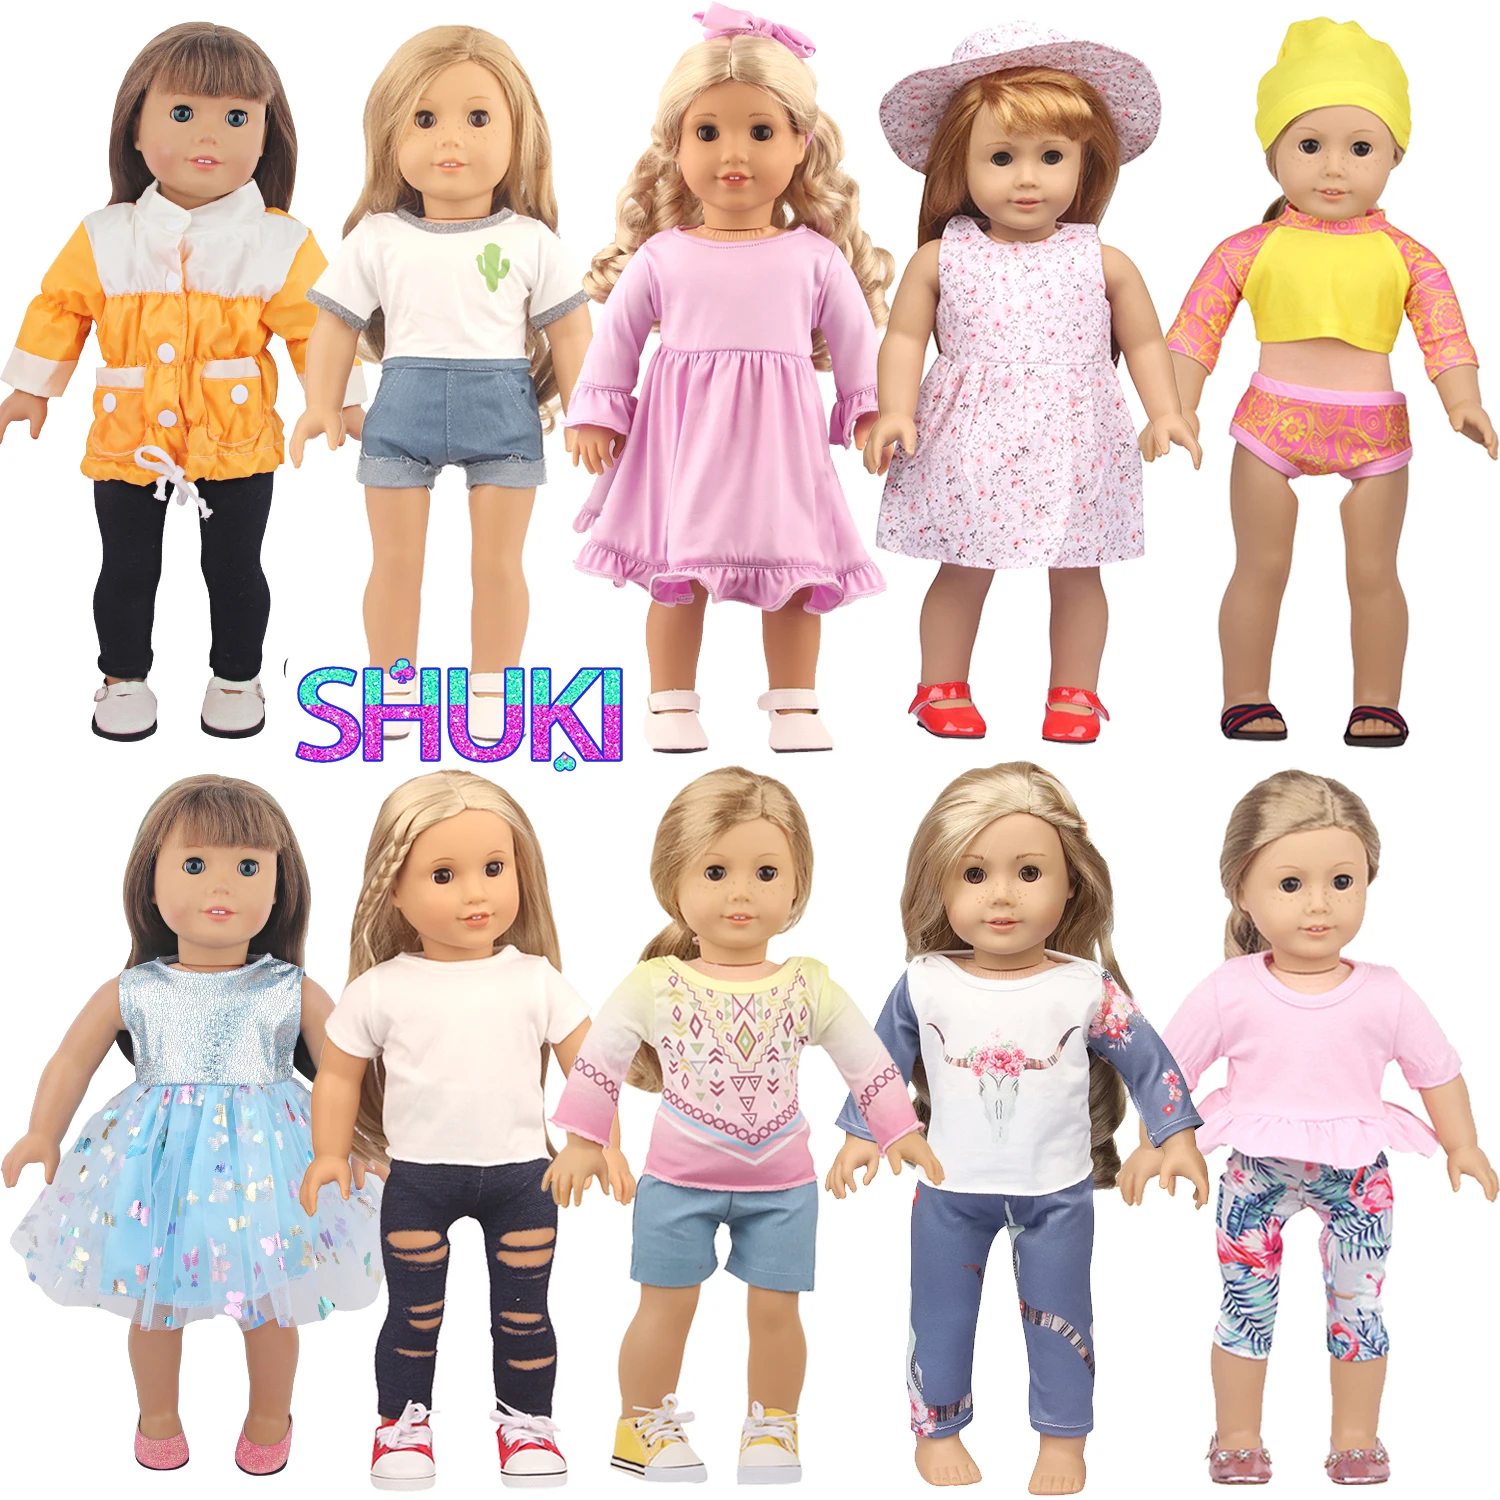 

Футболка С КАКТУСОМ + джинсовые шорты платье с цветочным принтом + шляпа кукла Фламинго комплект одежды для 18-дюймовых американских и 43 см малышей новорожденных и кукол Life Girl